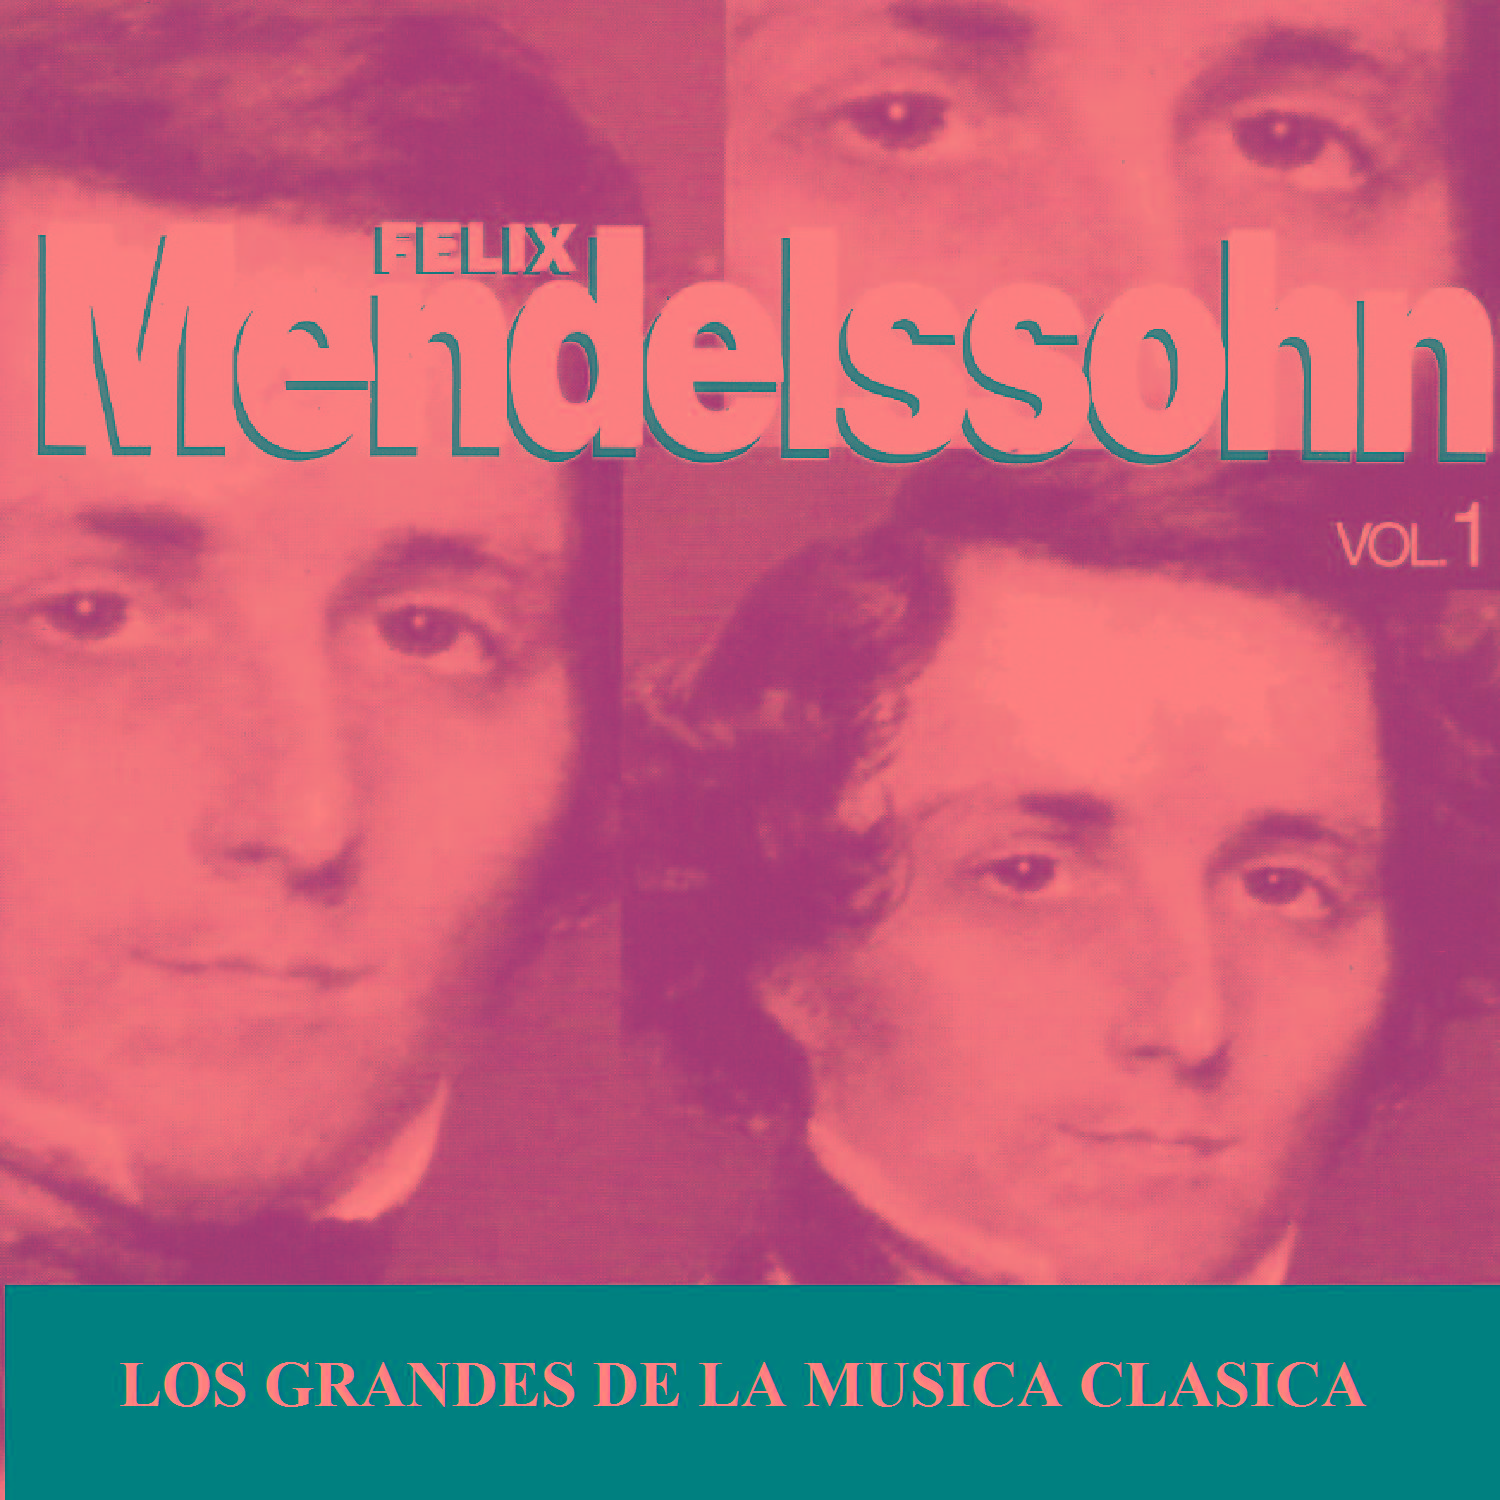 Los Grandes de la Musica Clasica - Felix Mendelssohn Vol. 1